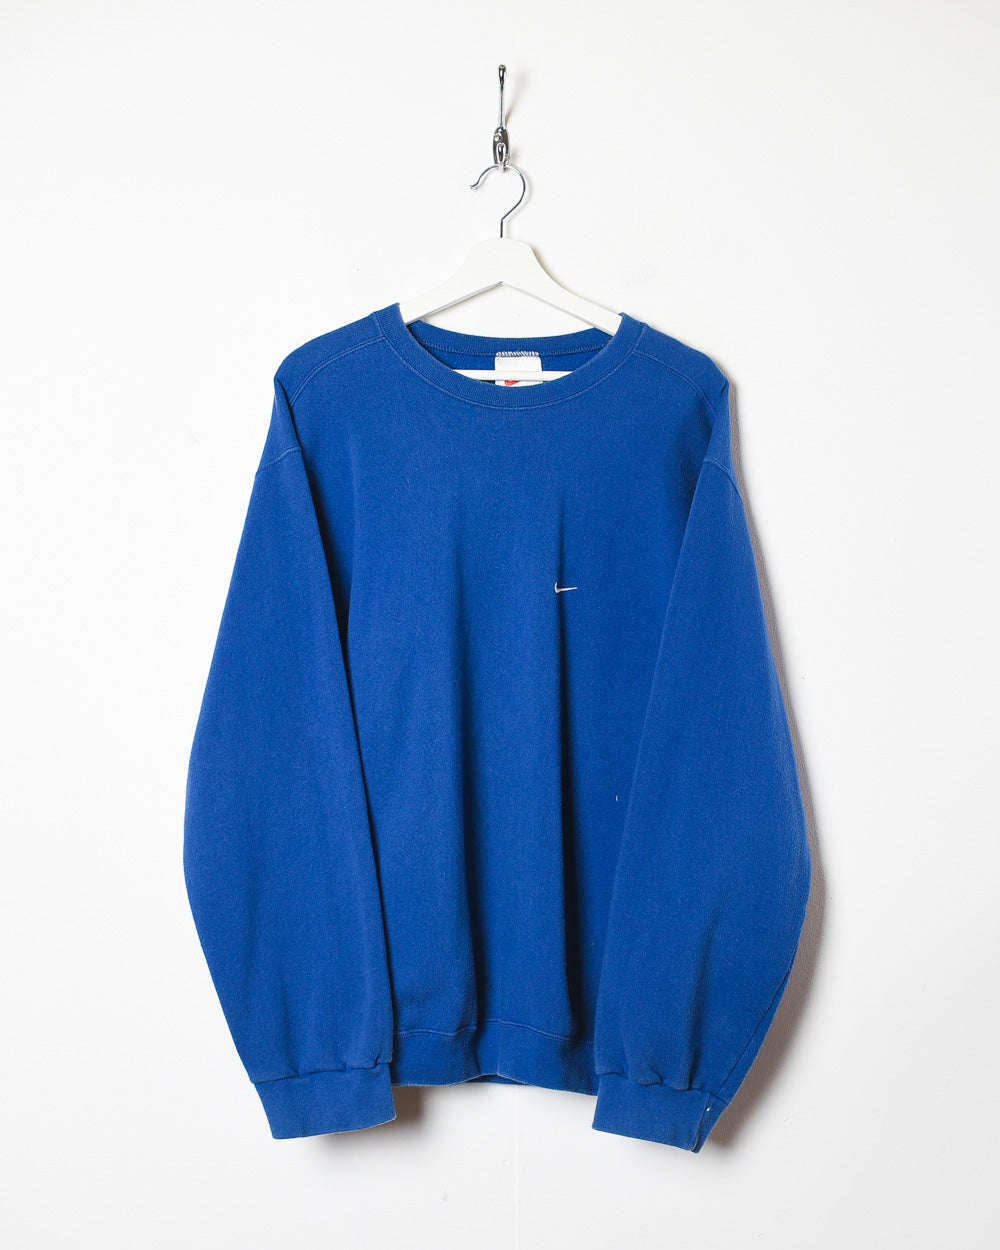 Blue Nike Sweatshirt - Large